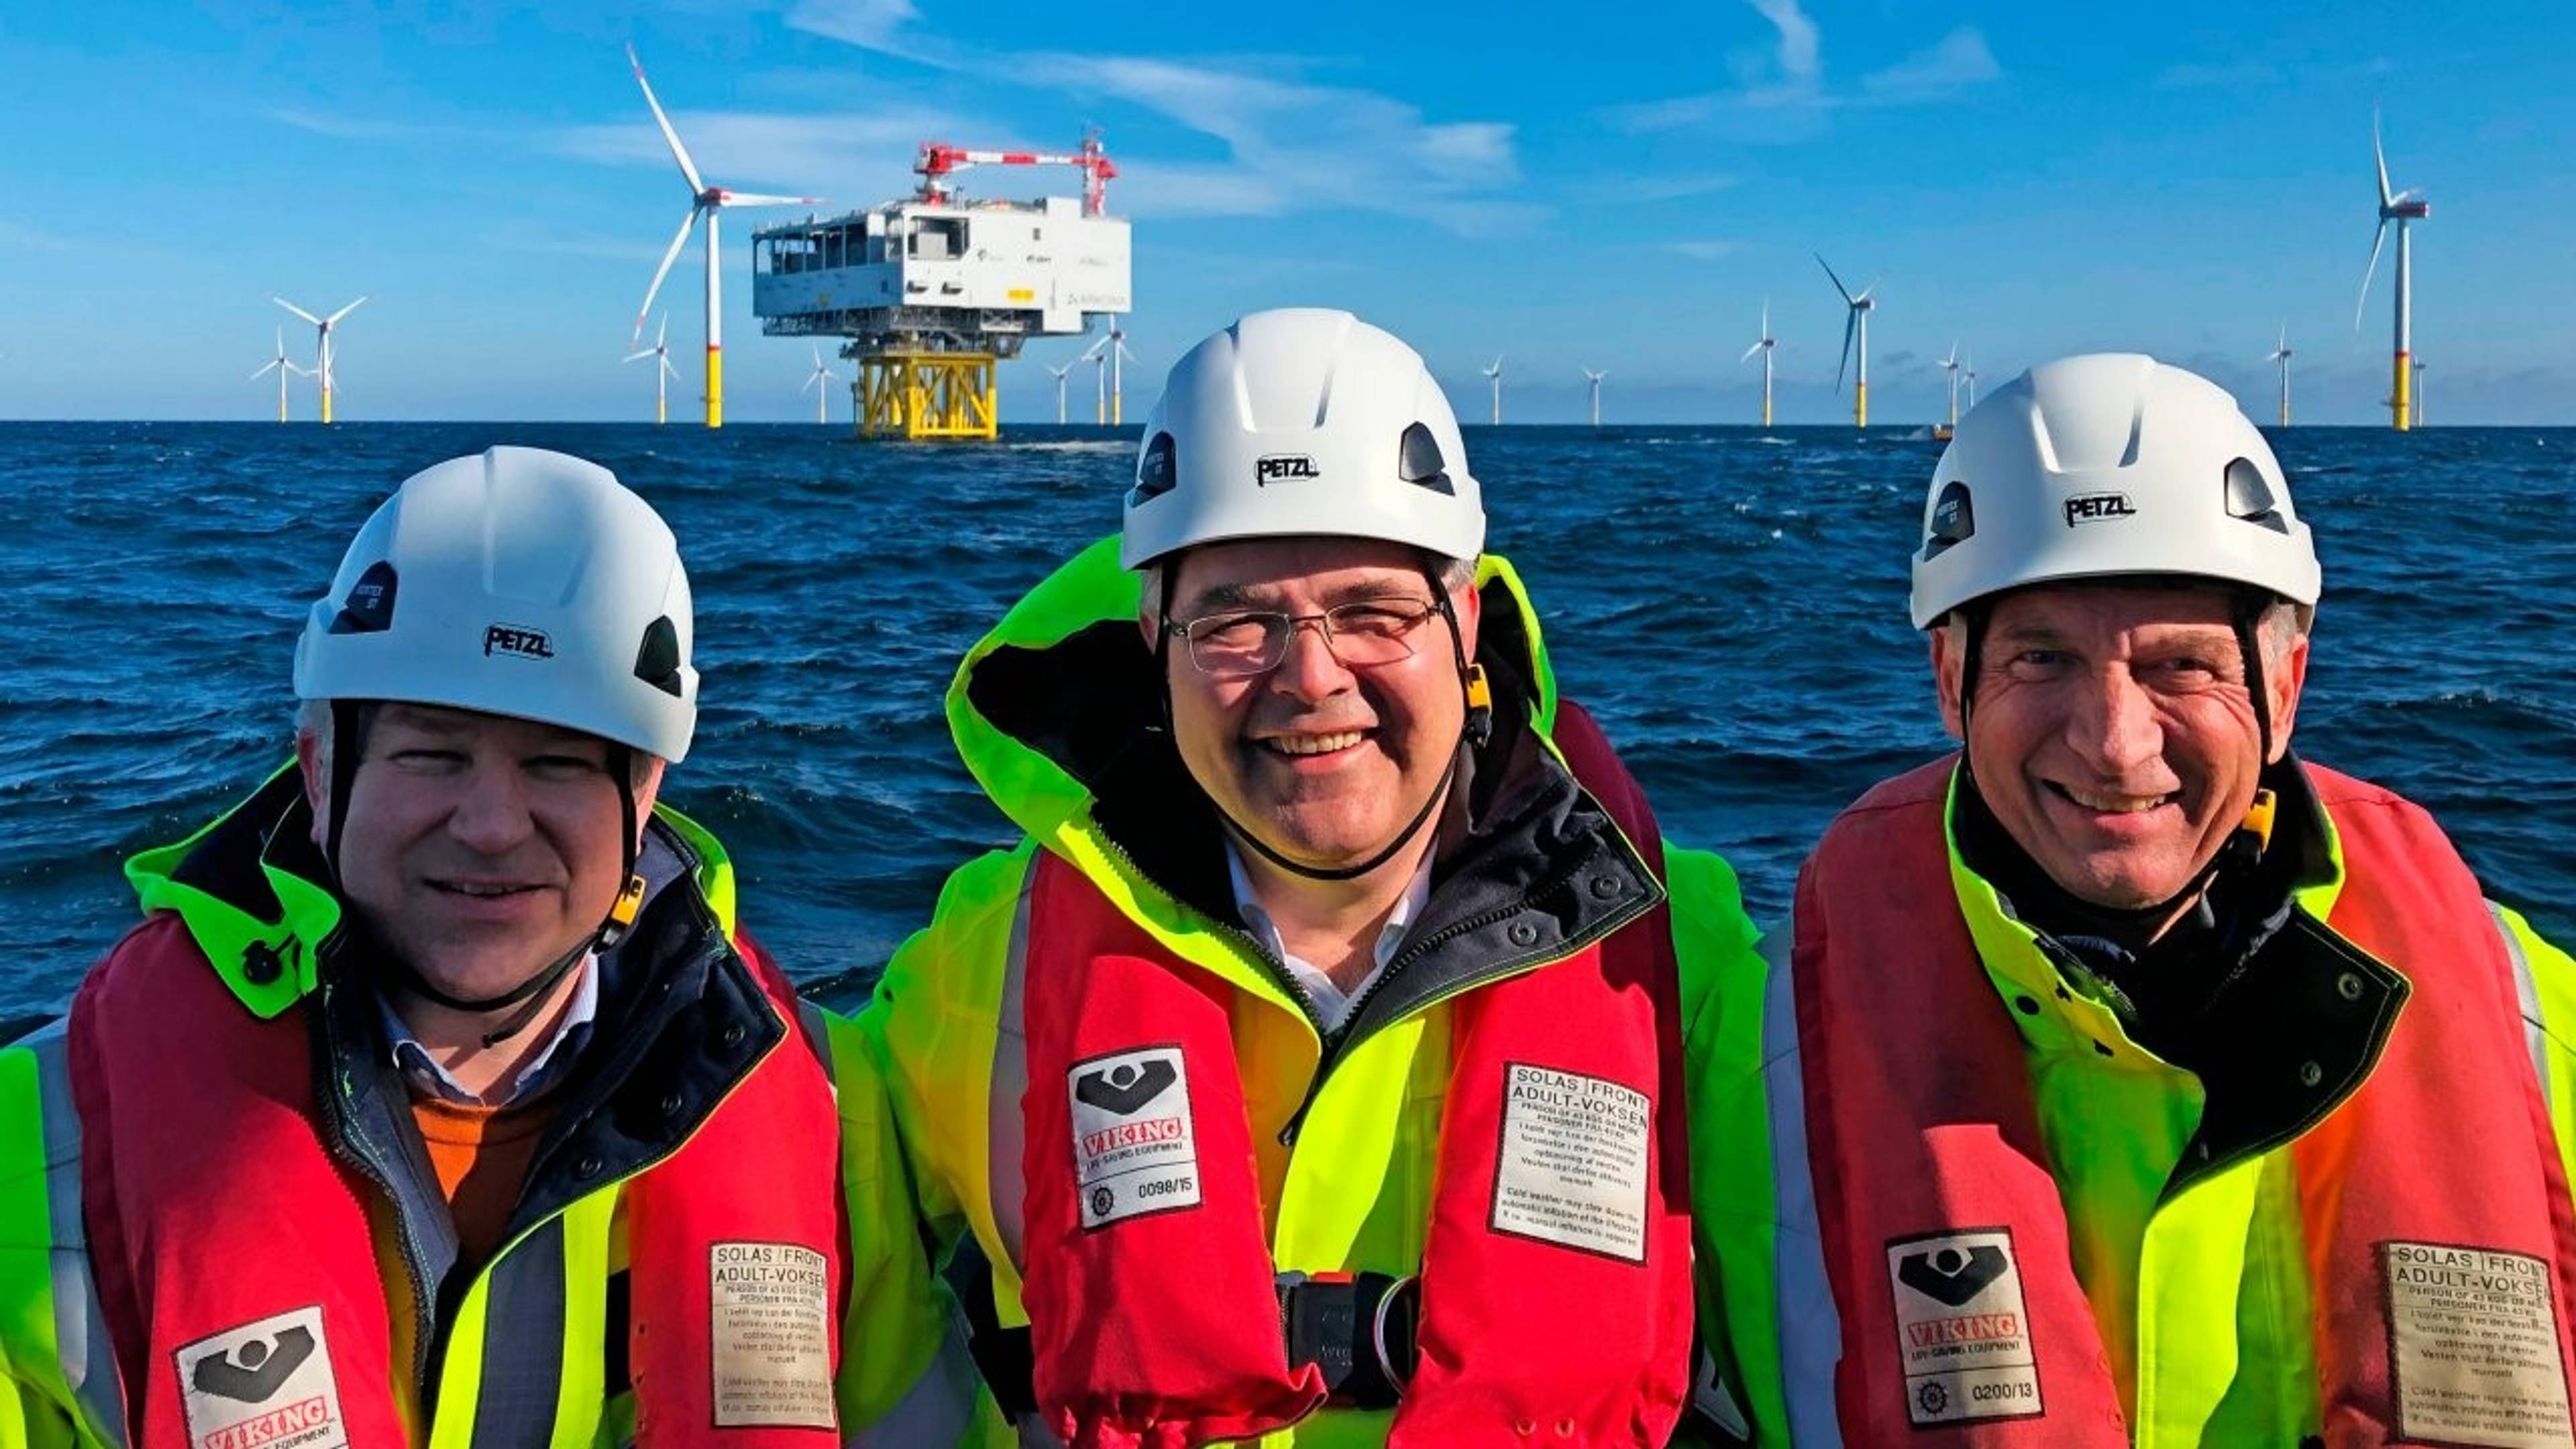 Besuch des Offshore-Windparks Arkona mit dem Boot: Pål Eitrheim (links), Equinors Executive Vice President für New Energy Solutions, der norwegische Energieminister Kjell-Børge Freiberg und der Equinors Aufsichtsratsvorsitzender Jon Erik Reinhardsen. (Foto: Eskil Eriksen / Equinor ASA)